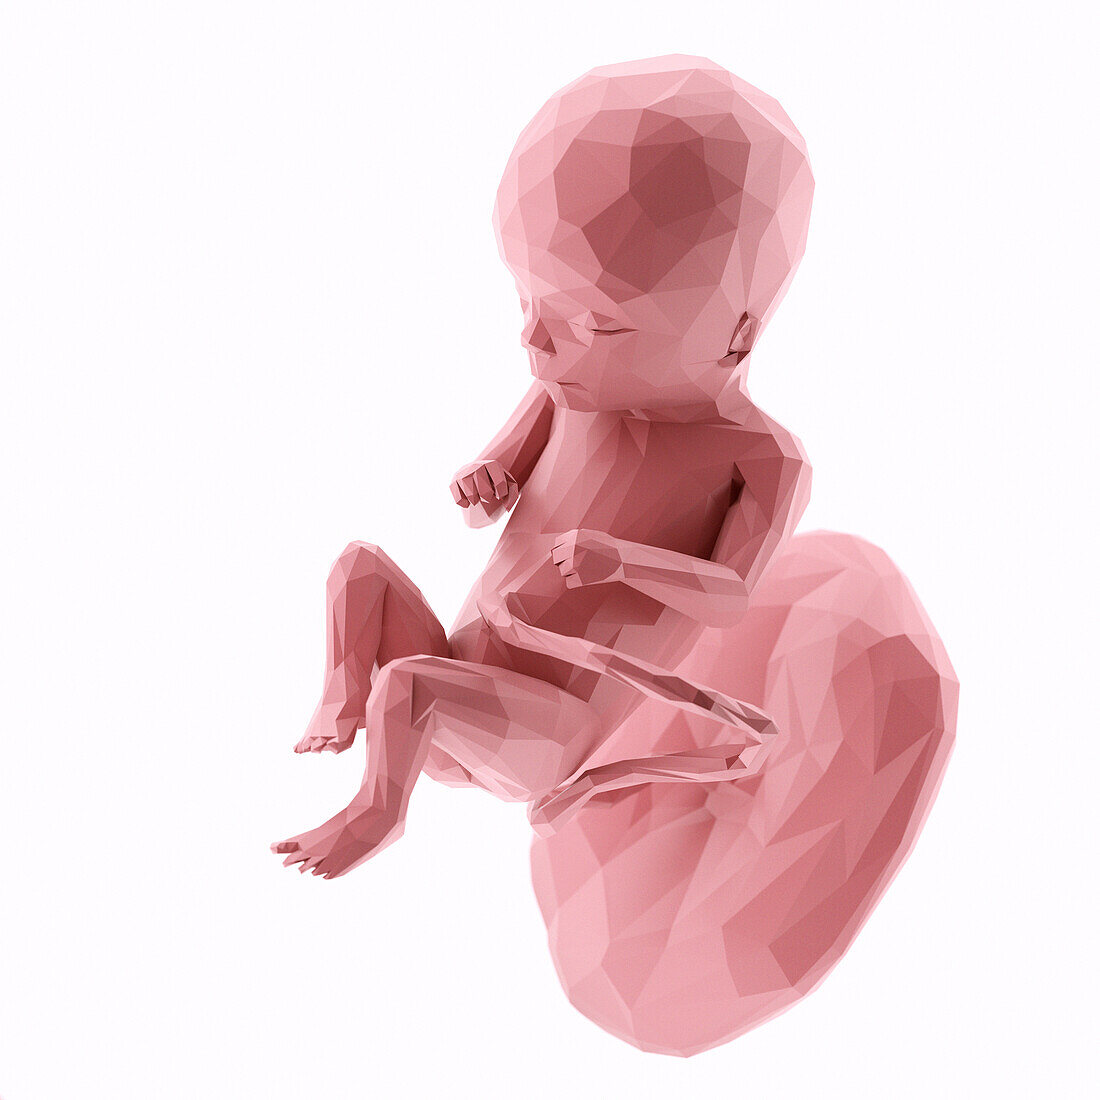 Human fetus at week 16, abstract illustration